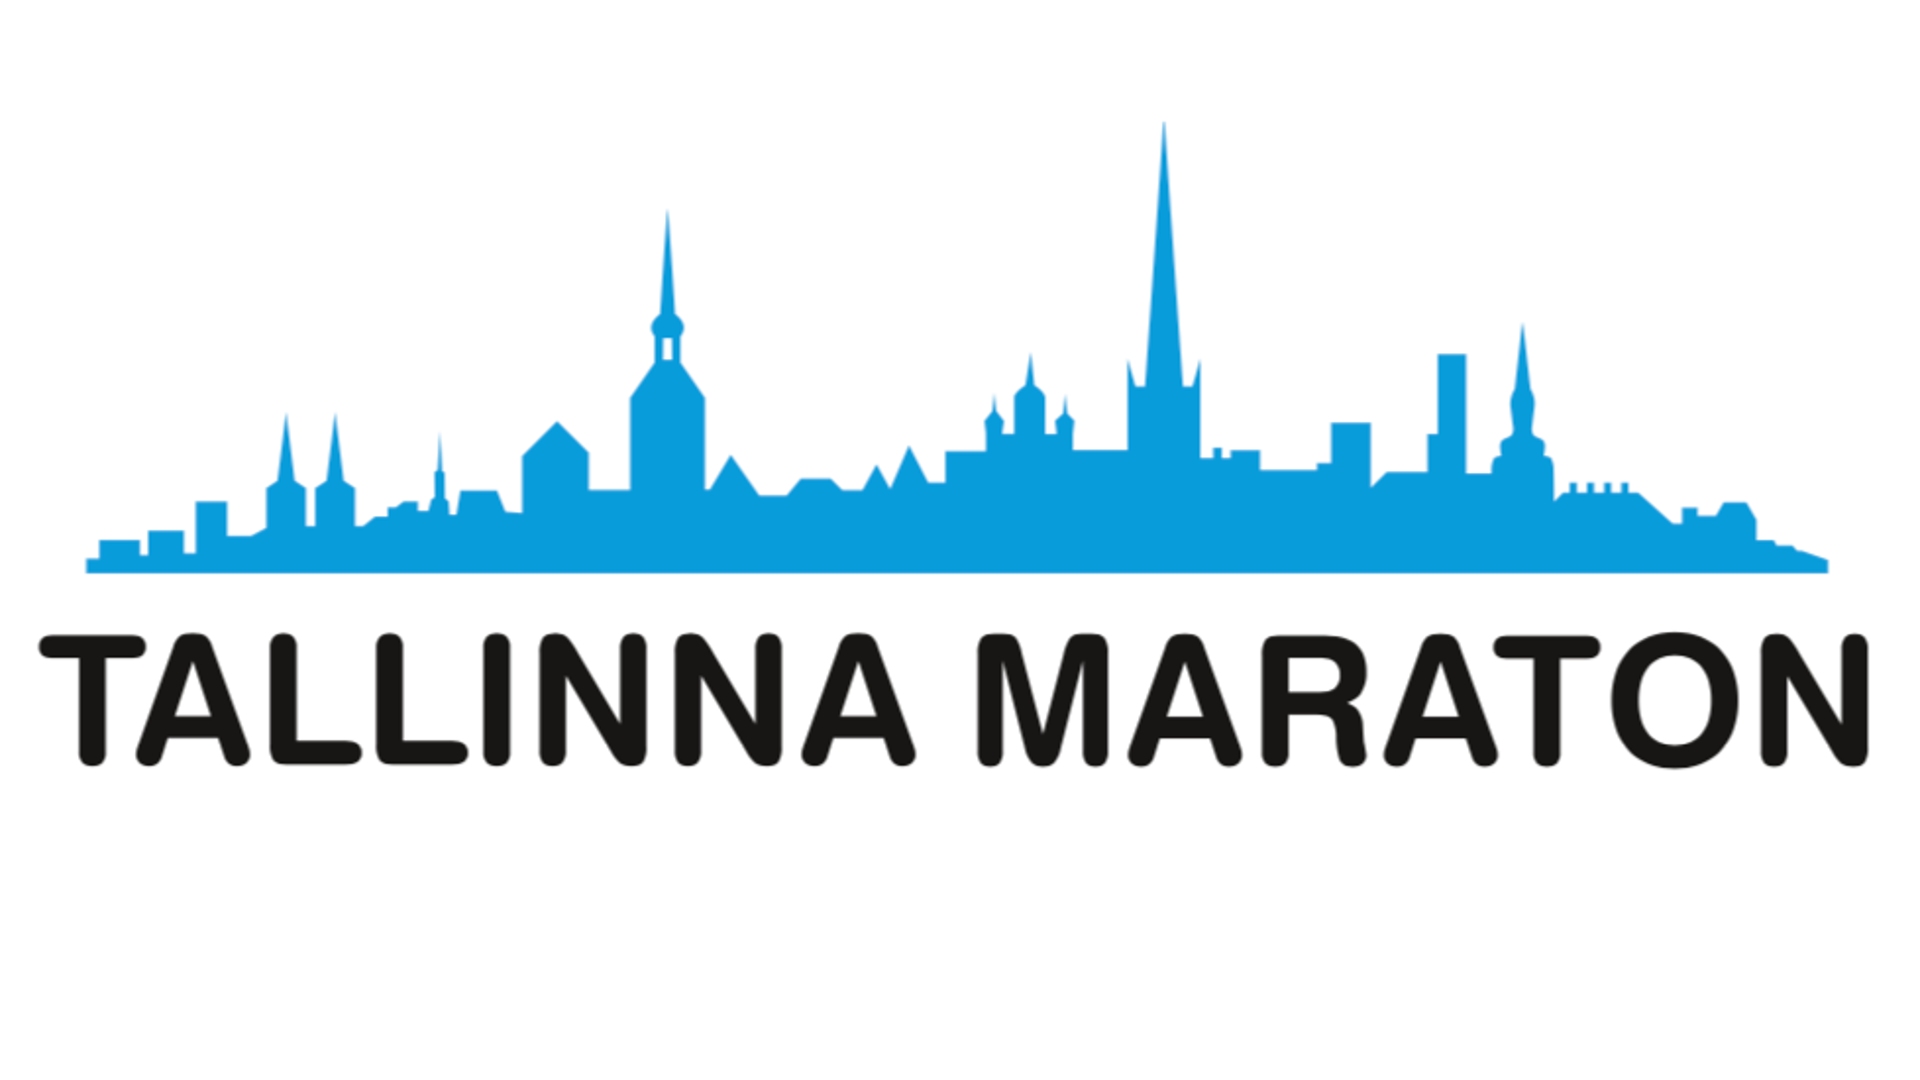 Tallinna Marathon logo